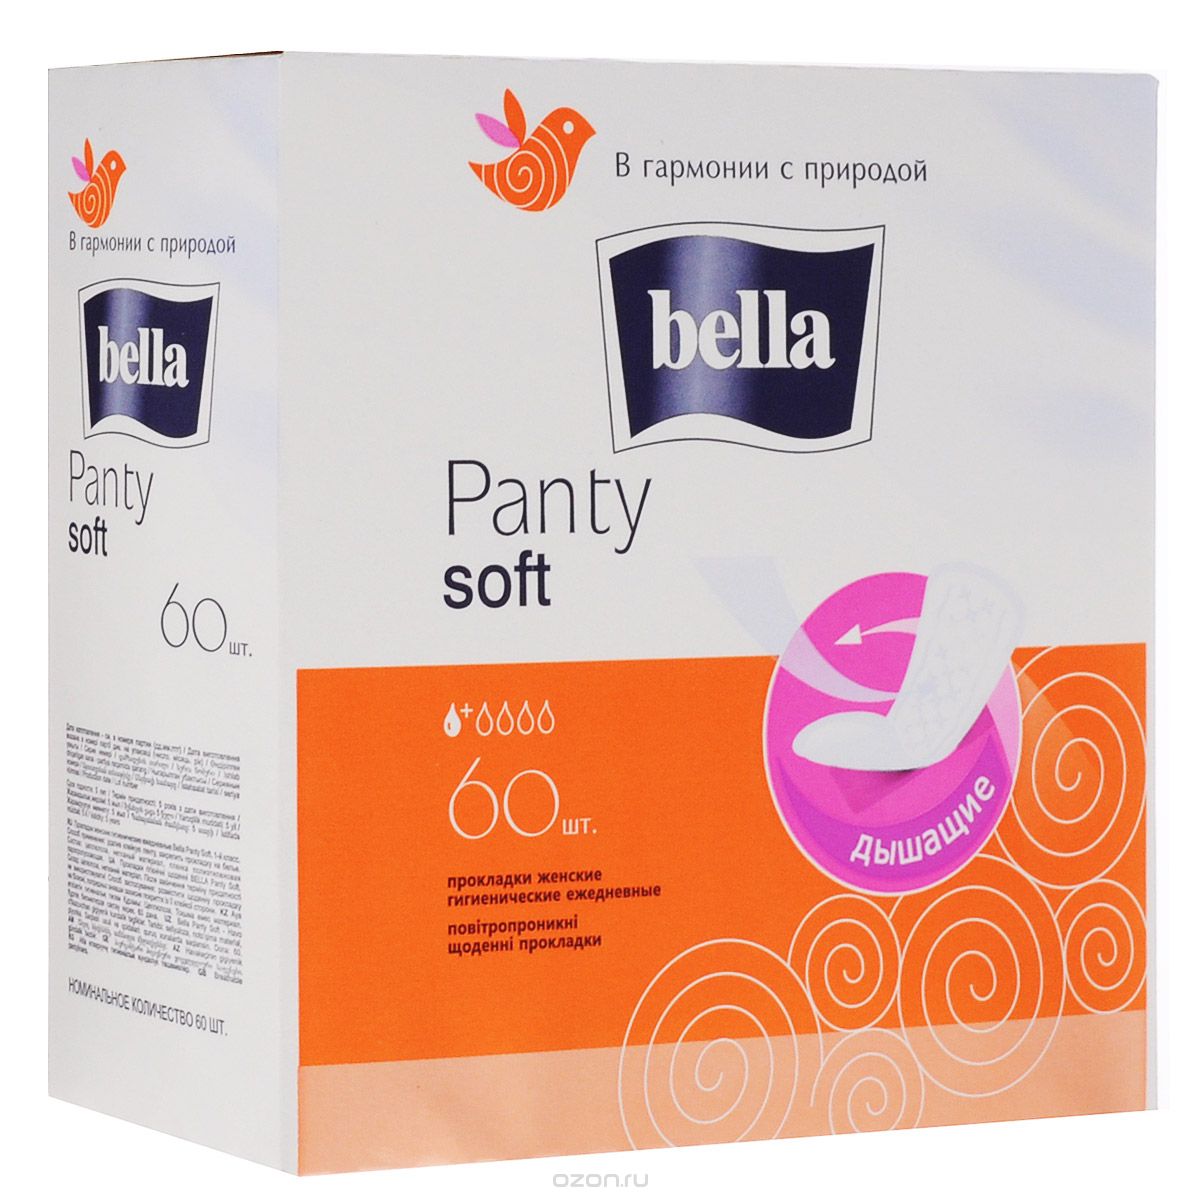 Ежедневные прокладки Panty Soft, Bella, 60 шт